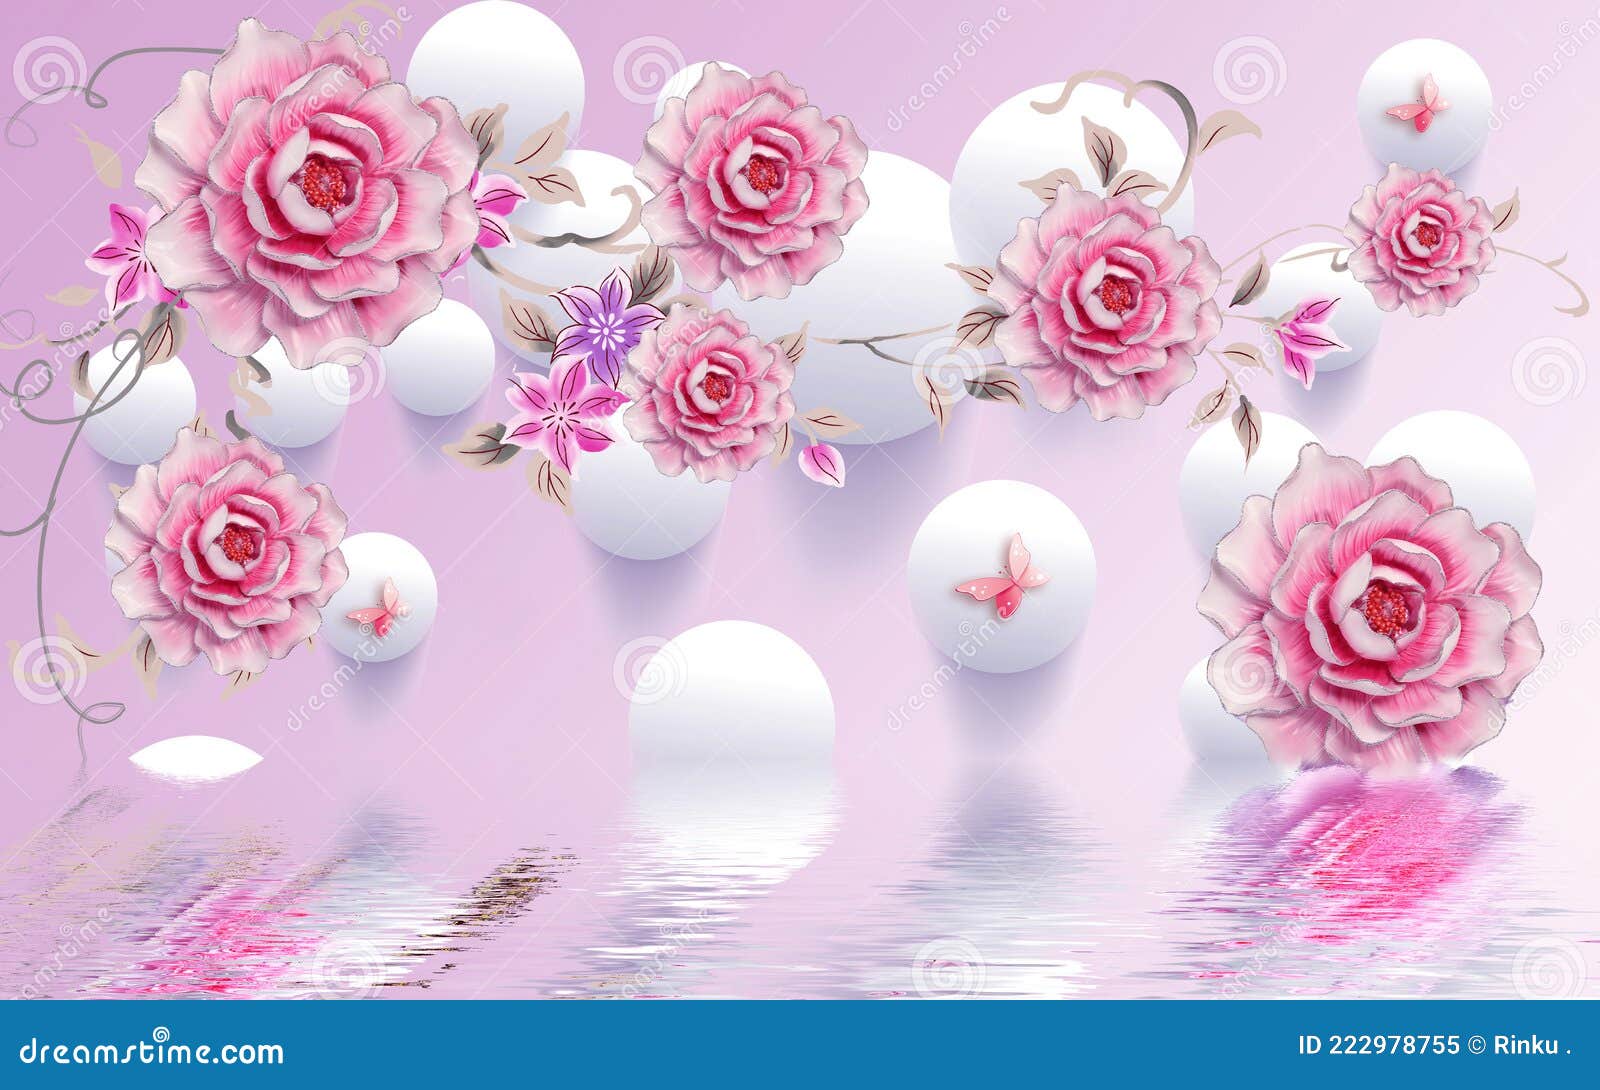 Những bông hoa hồng xinh đẹp của Beautiful Pink Flowers Illustration sẽ khiến bạn cảm thấy yêu đời hơn. Hình ảnh này mang đến sự tươi mới và đong đầy cảm xúc cho lòng người. Hãy để Beautiful Pink Flowers Illustration truyền tải niềm vui và hy vọng cho bạn hôm nay.